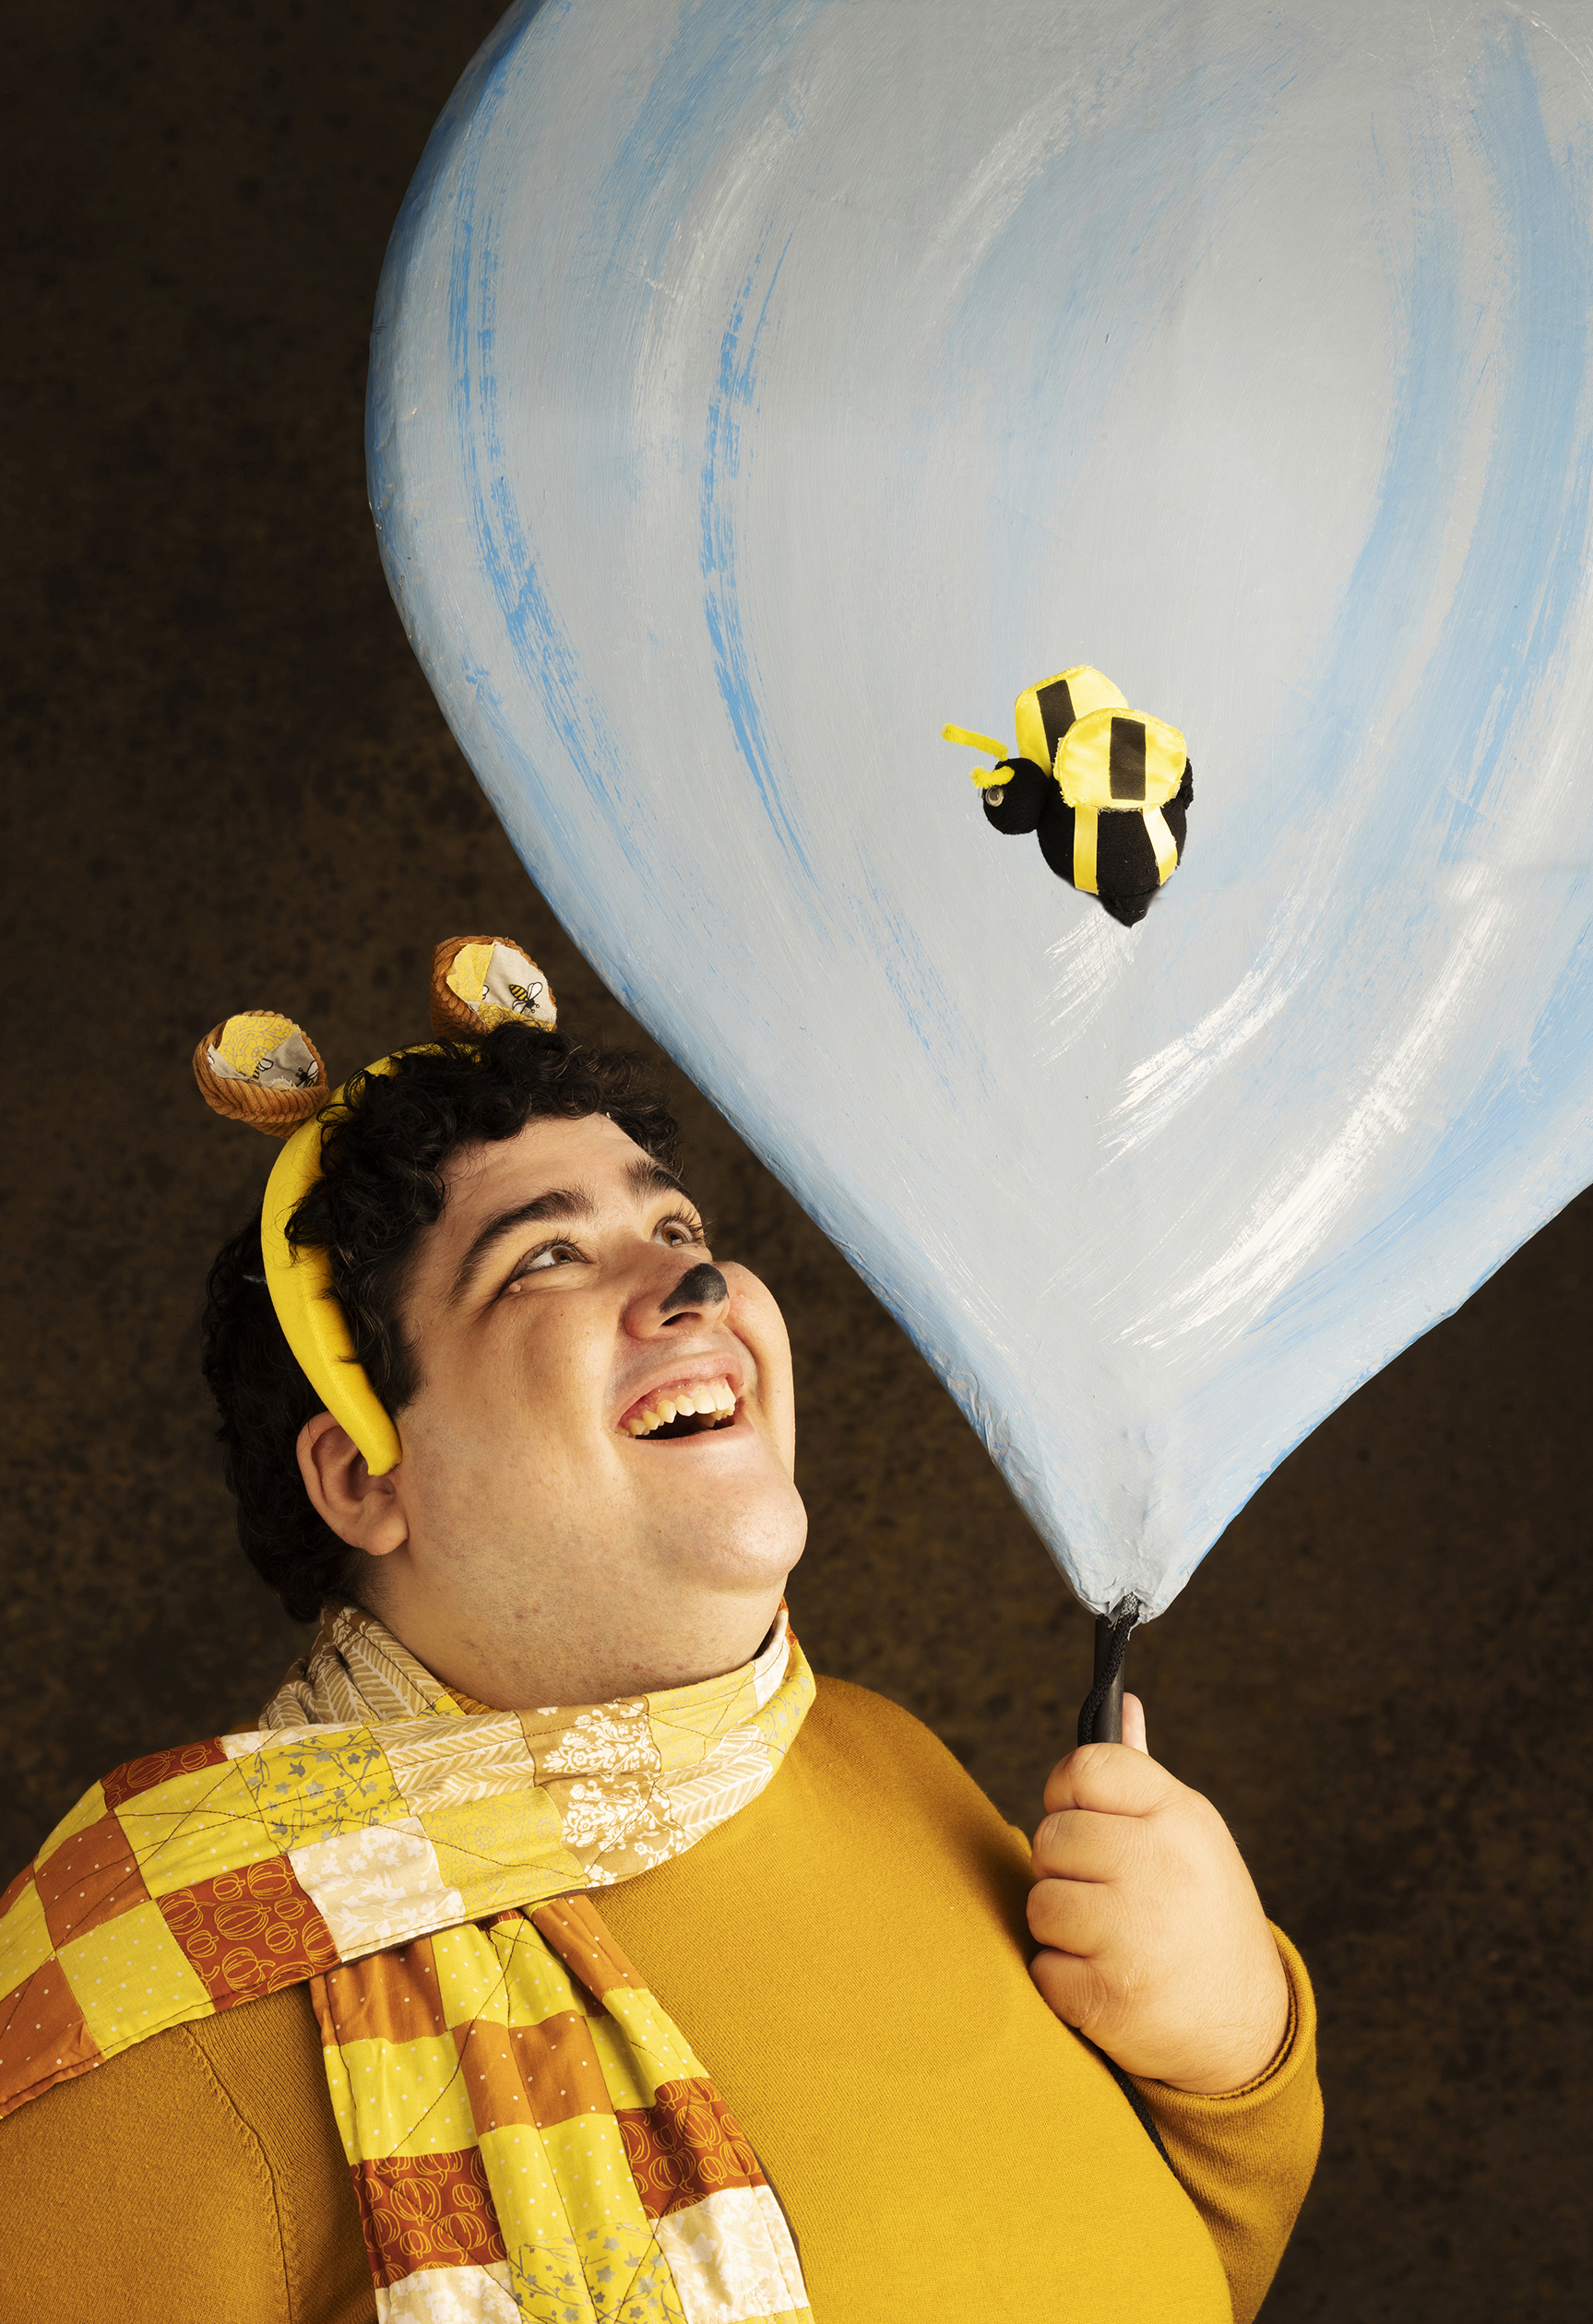 pooh balloon 